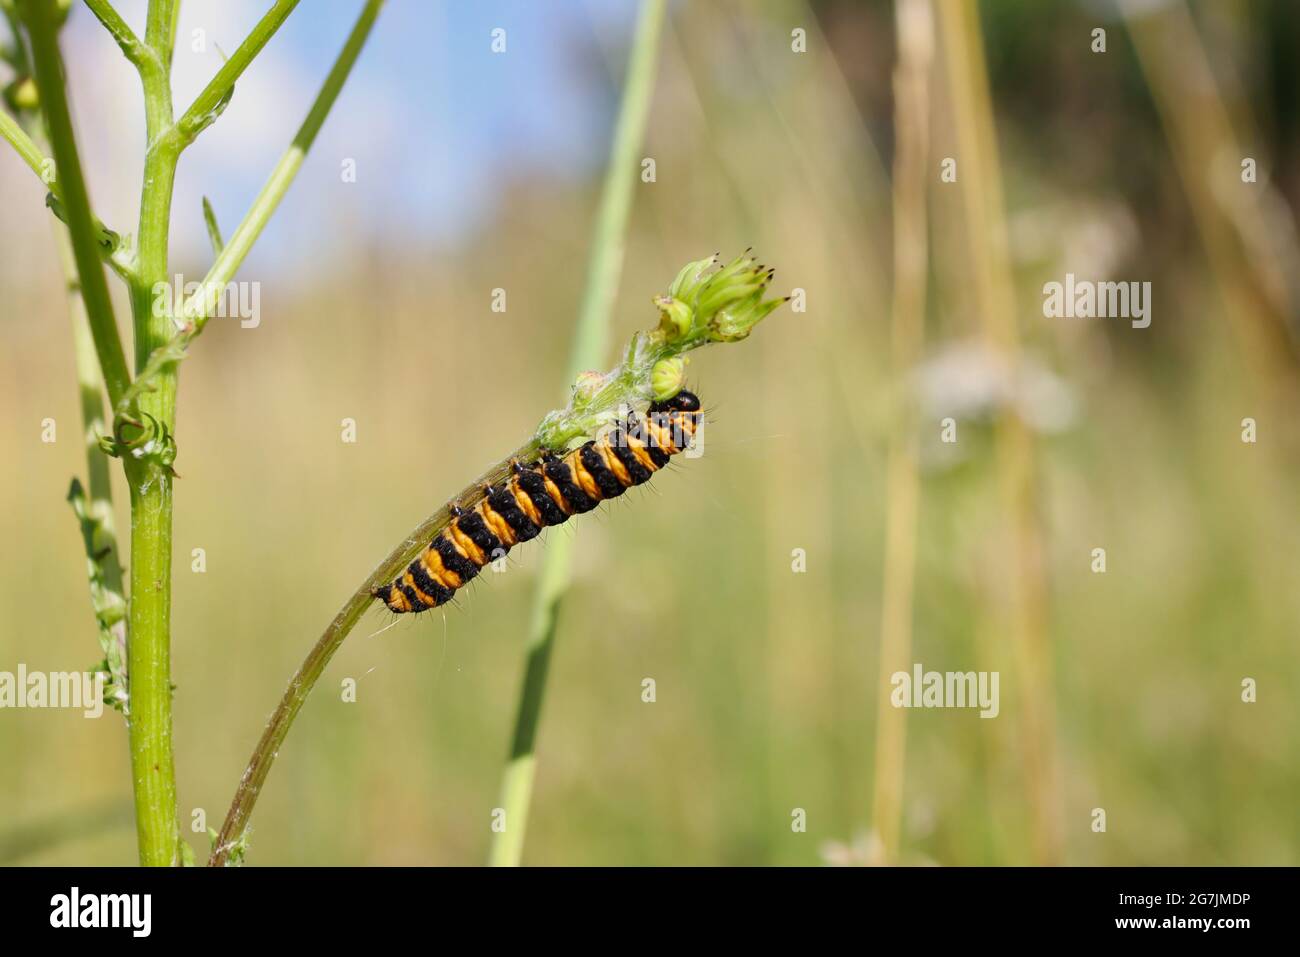 Nahaufnahme von Cinnabar Moth Caterpillar in Summer Nature. Orange und schwarz gestreiftes Insekt auf der blühenden Ragwürzepflanze. Stockfoto